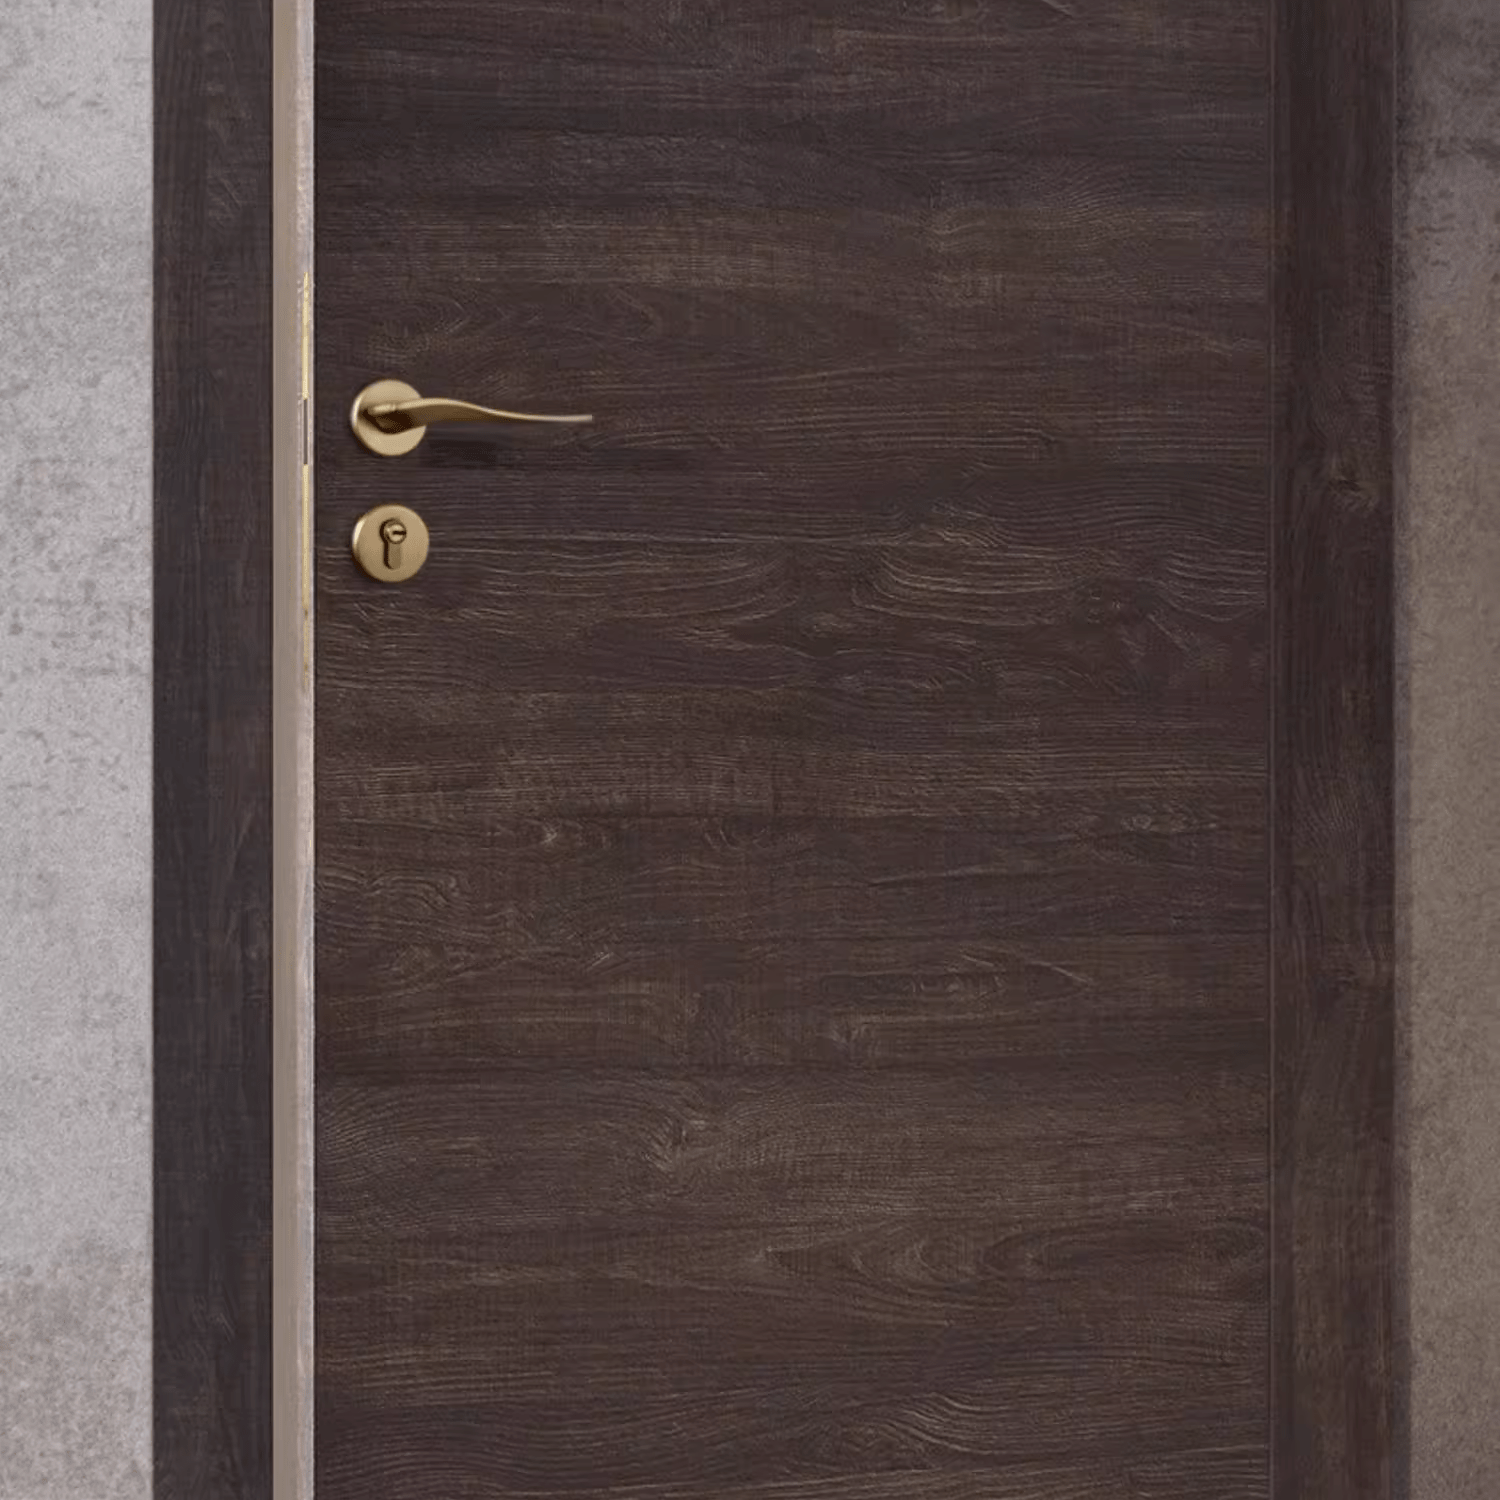 Goo-Ki Solid Brass Interior Door Lock Luxury Bedroom Europe Door Lock with Key Whole Set